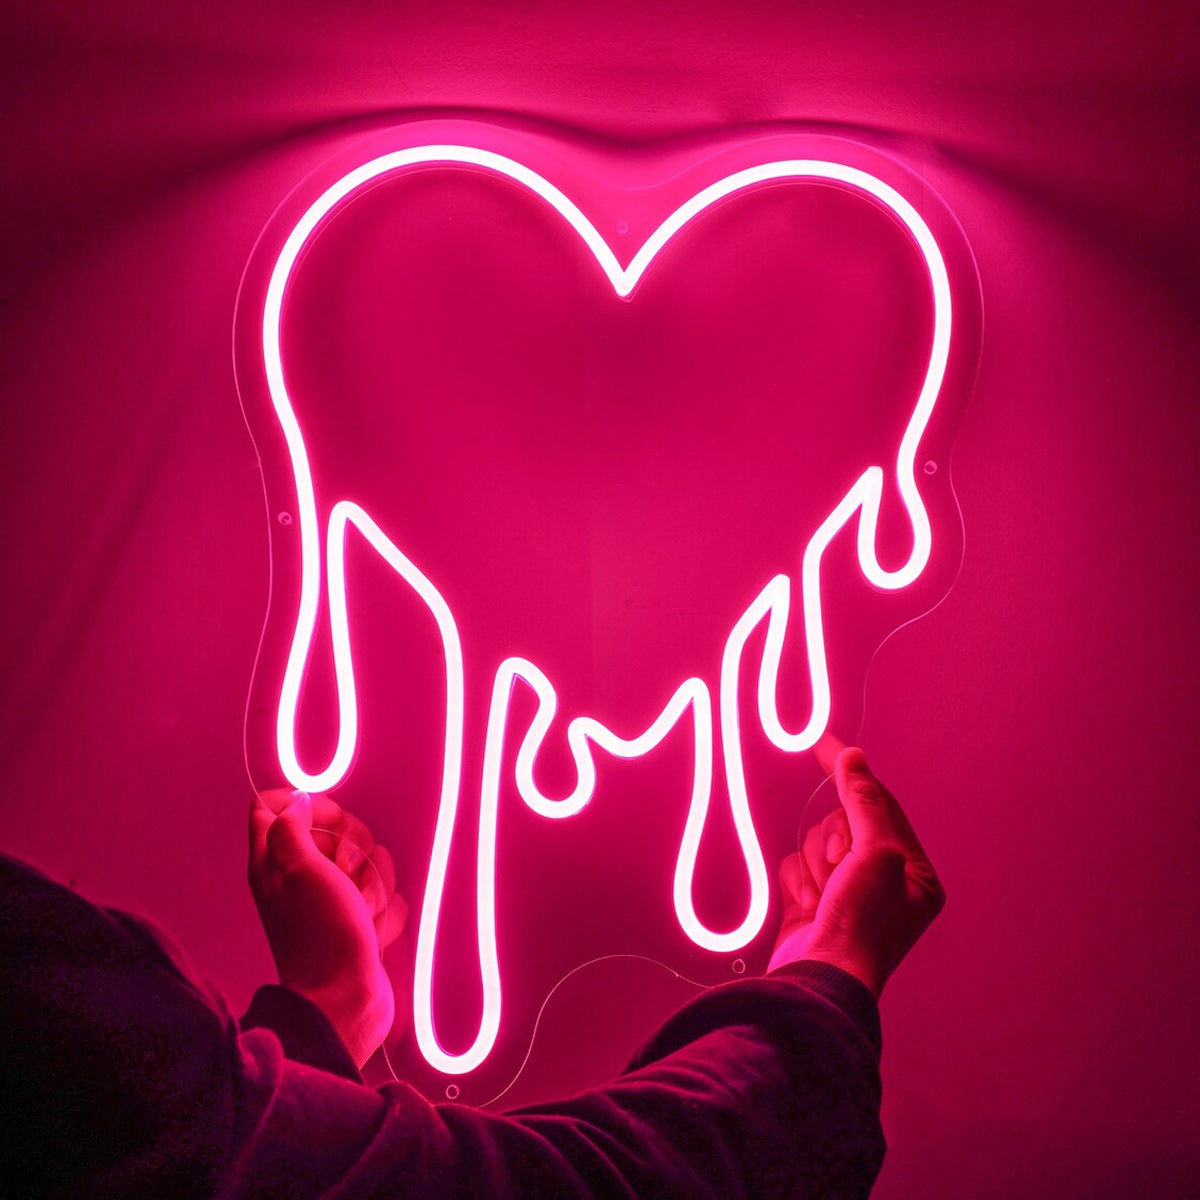 NEONIP-100% Insegna luminosa al neon a forma di cuore fuso fatta a mano a LED